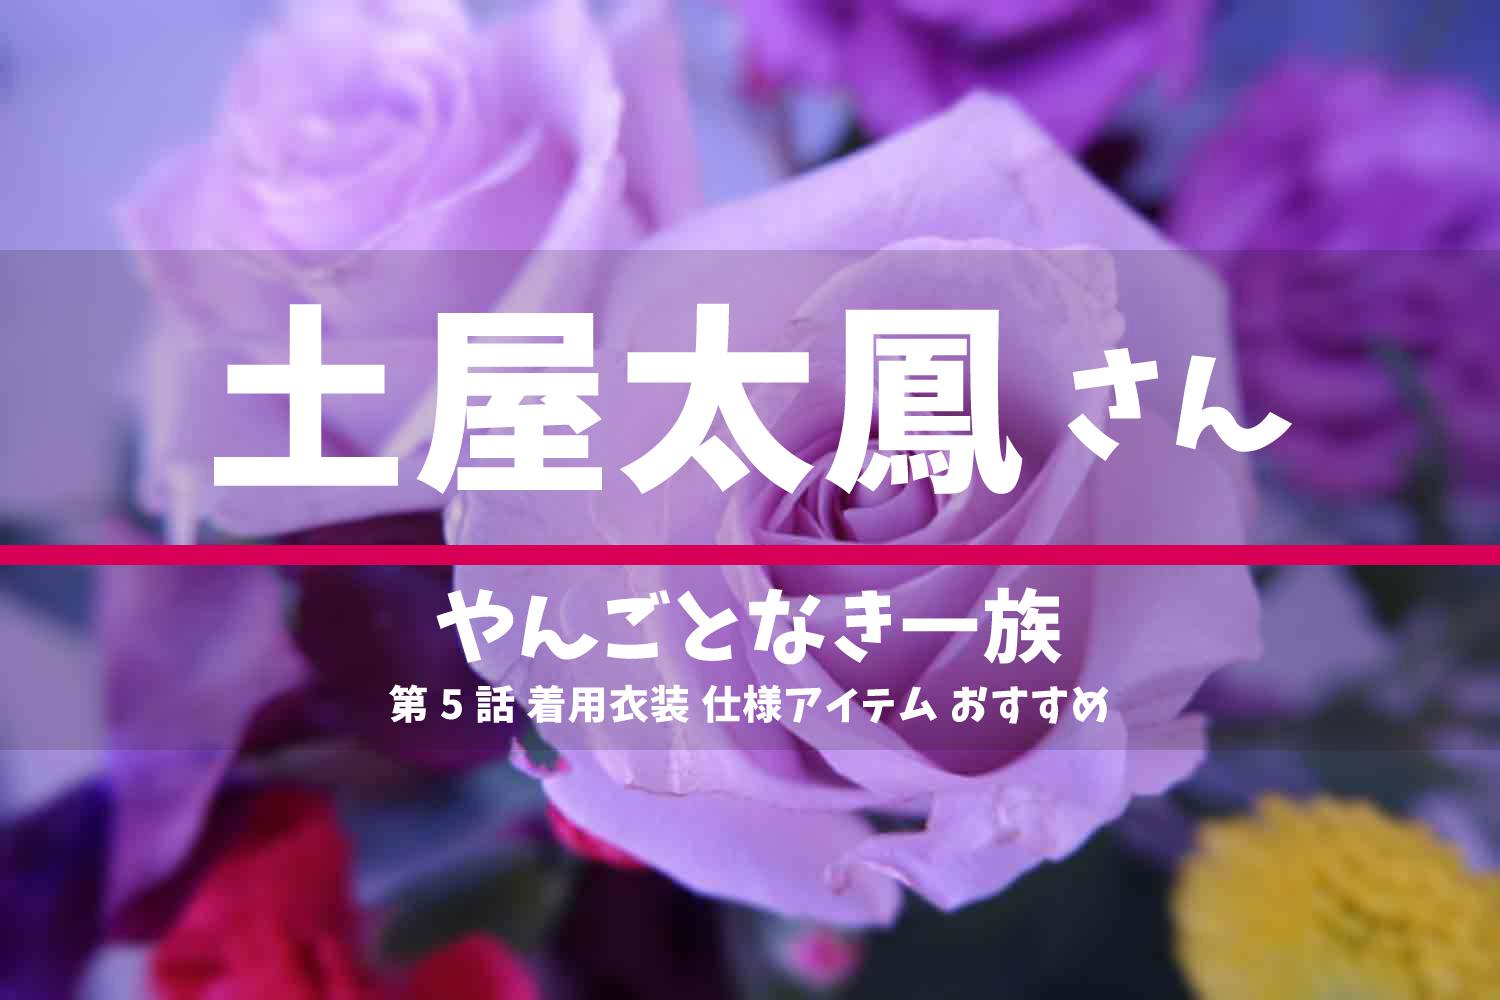 やんごとなき一族 土屋太鳳さん ドラマ 衣装 2022年5月19日放送